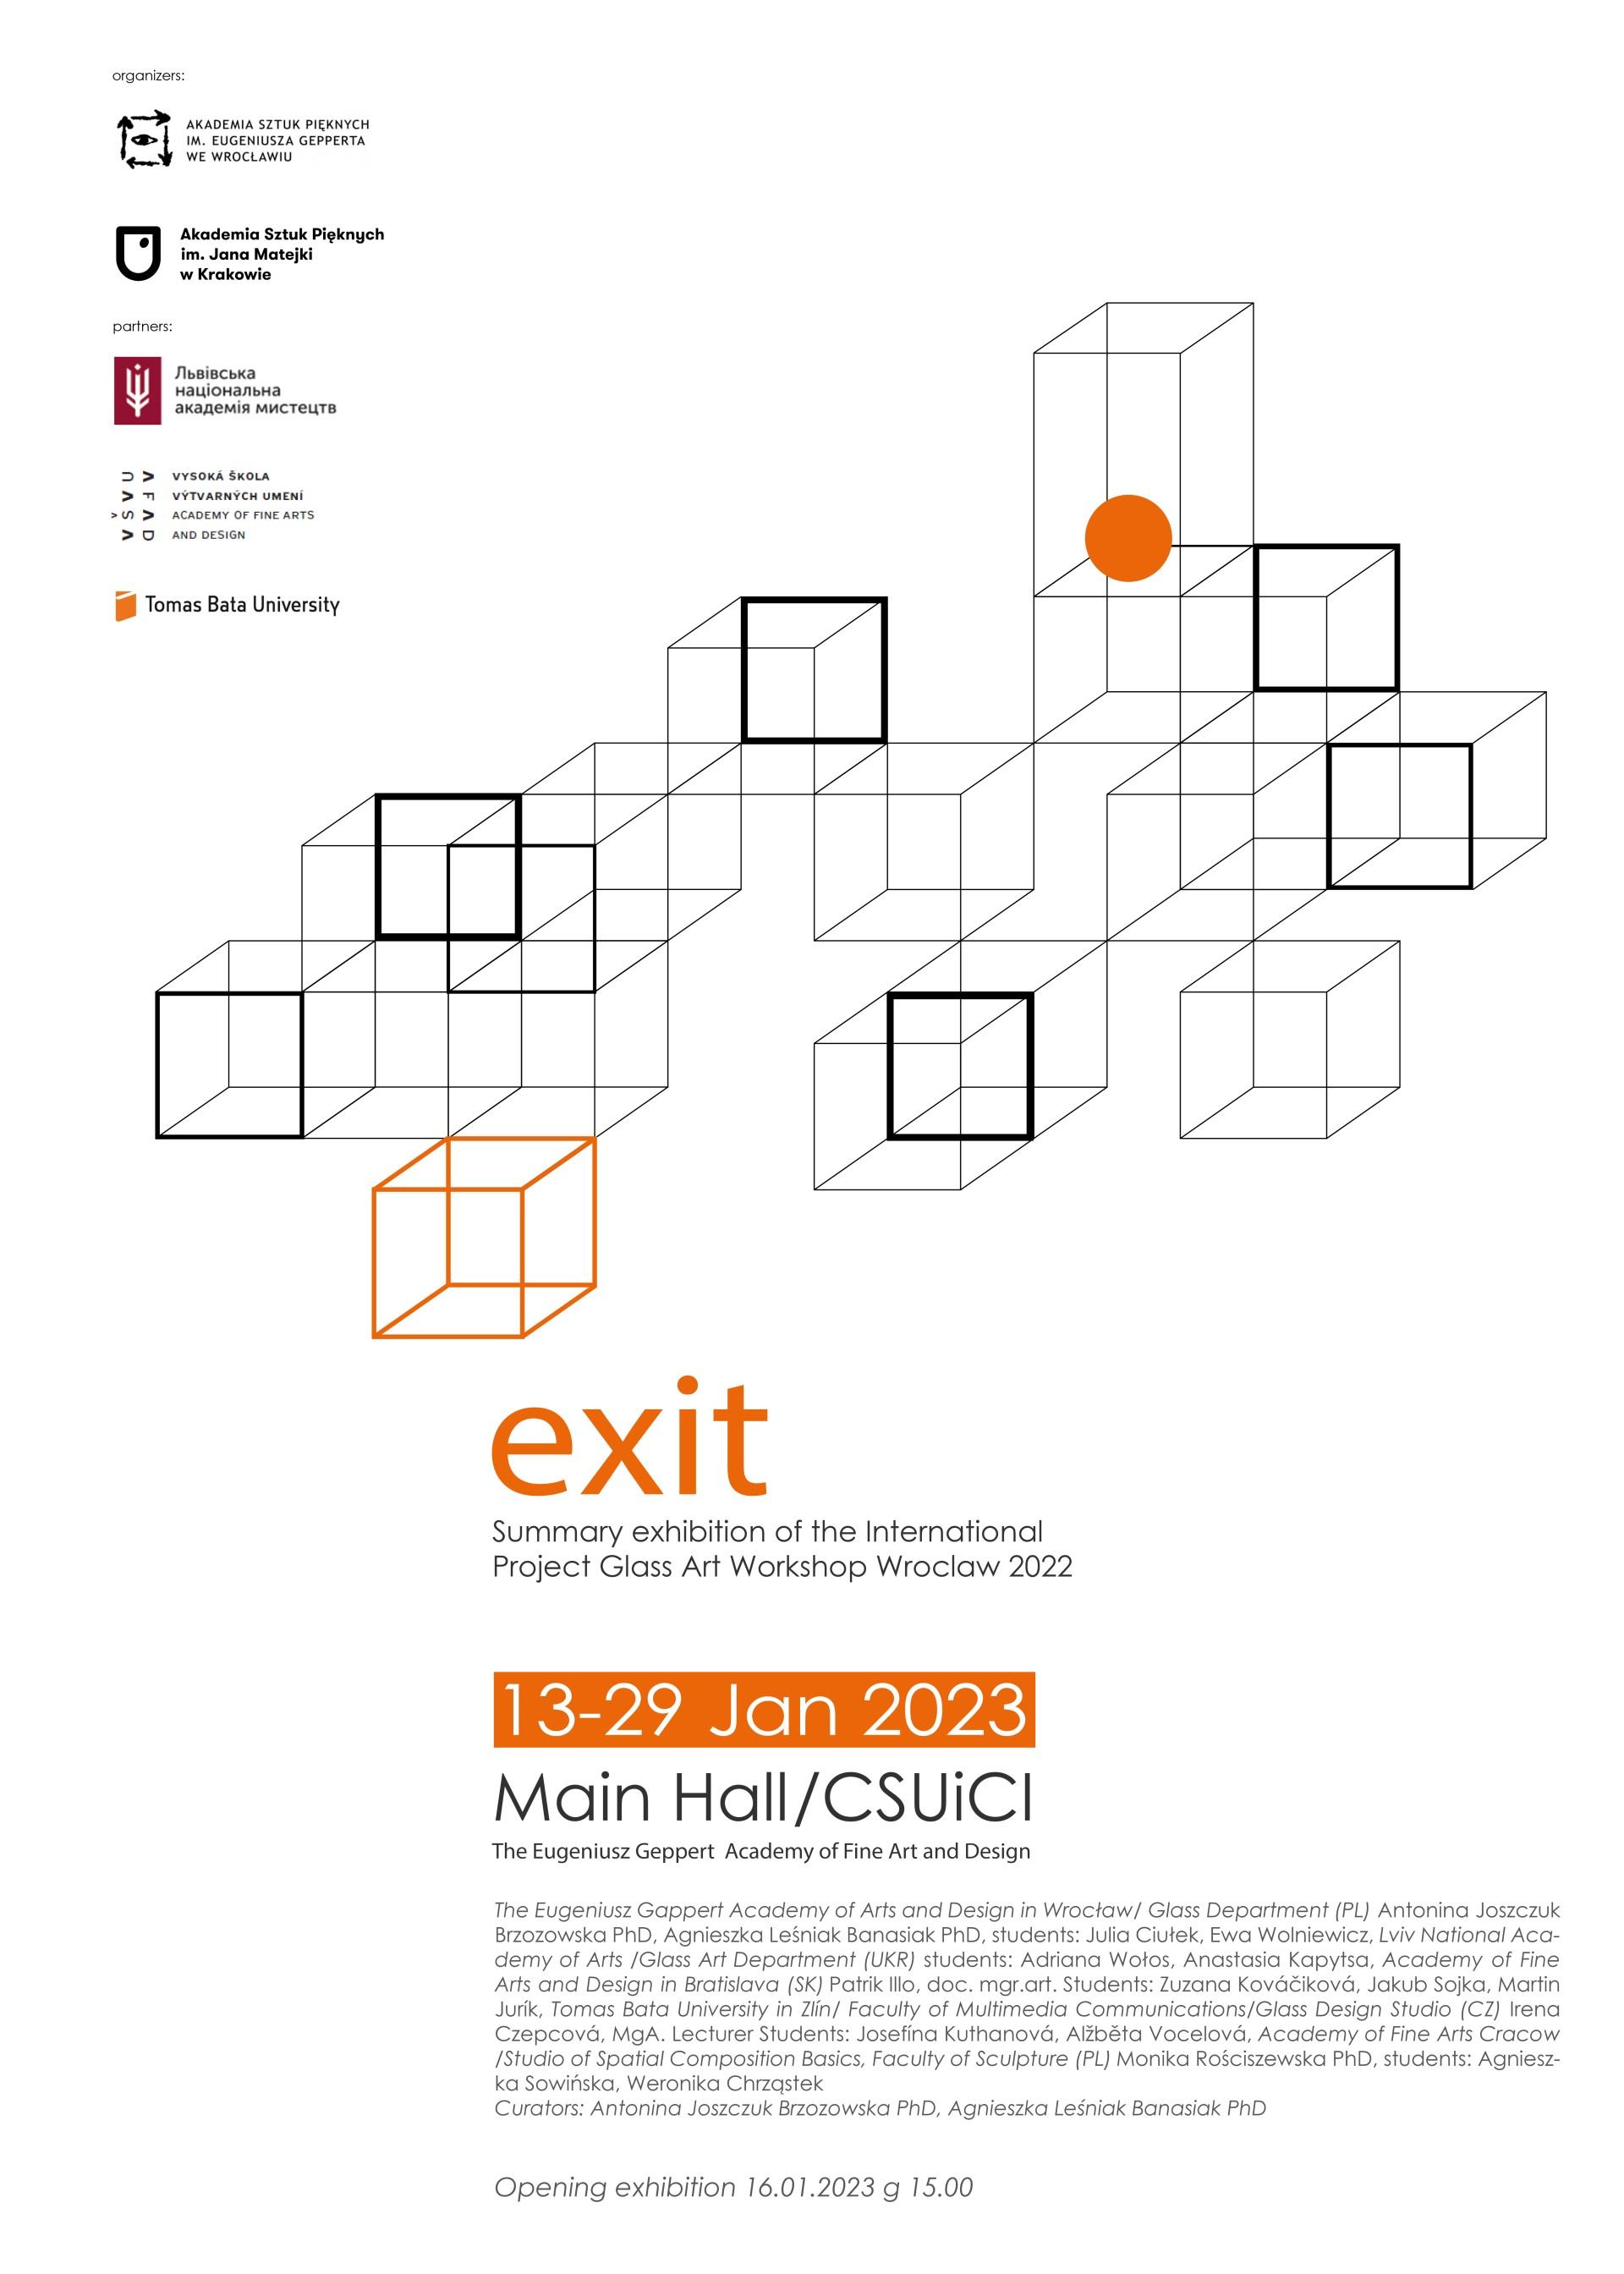 Plakat promujący wystawę zbiorową pt. Exit